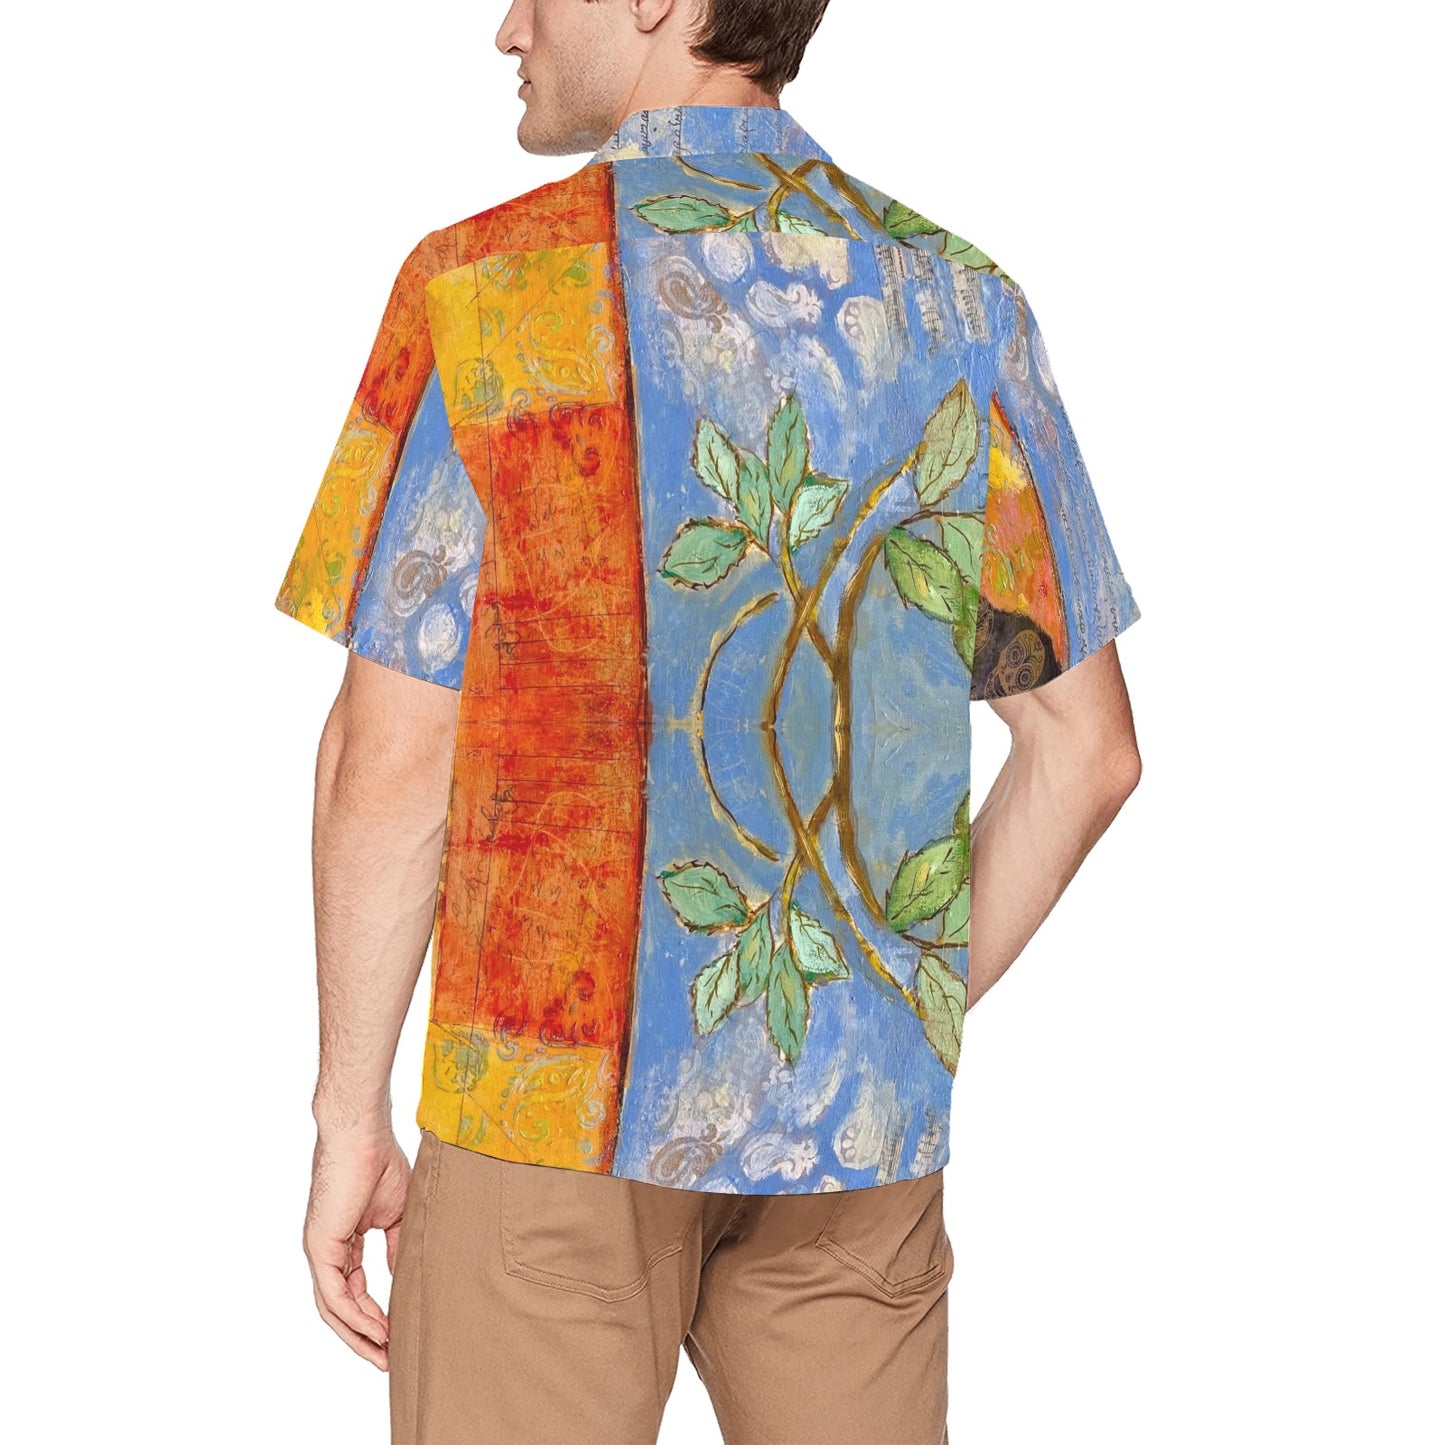 Tropical Paradise Custom Art Hawaiian Shirt - Soft Fabric, Relaxed Fit